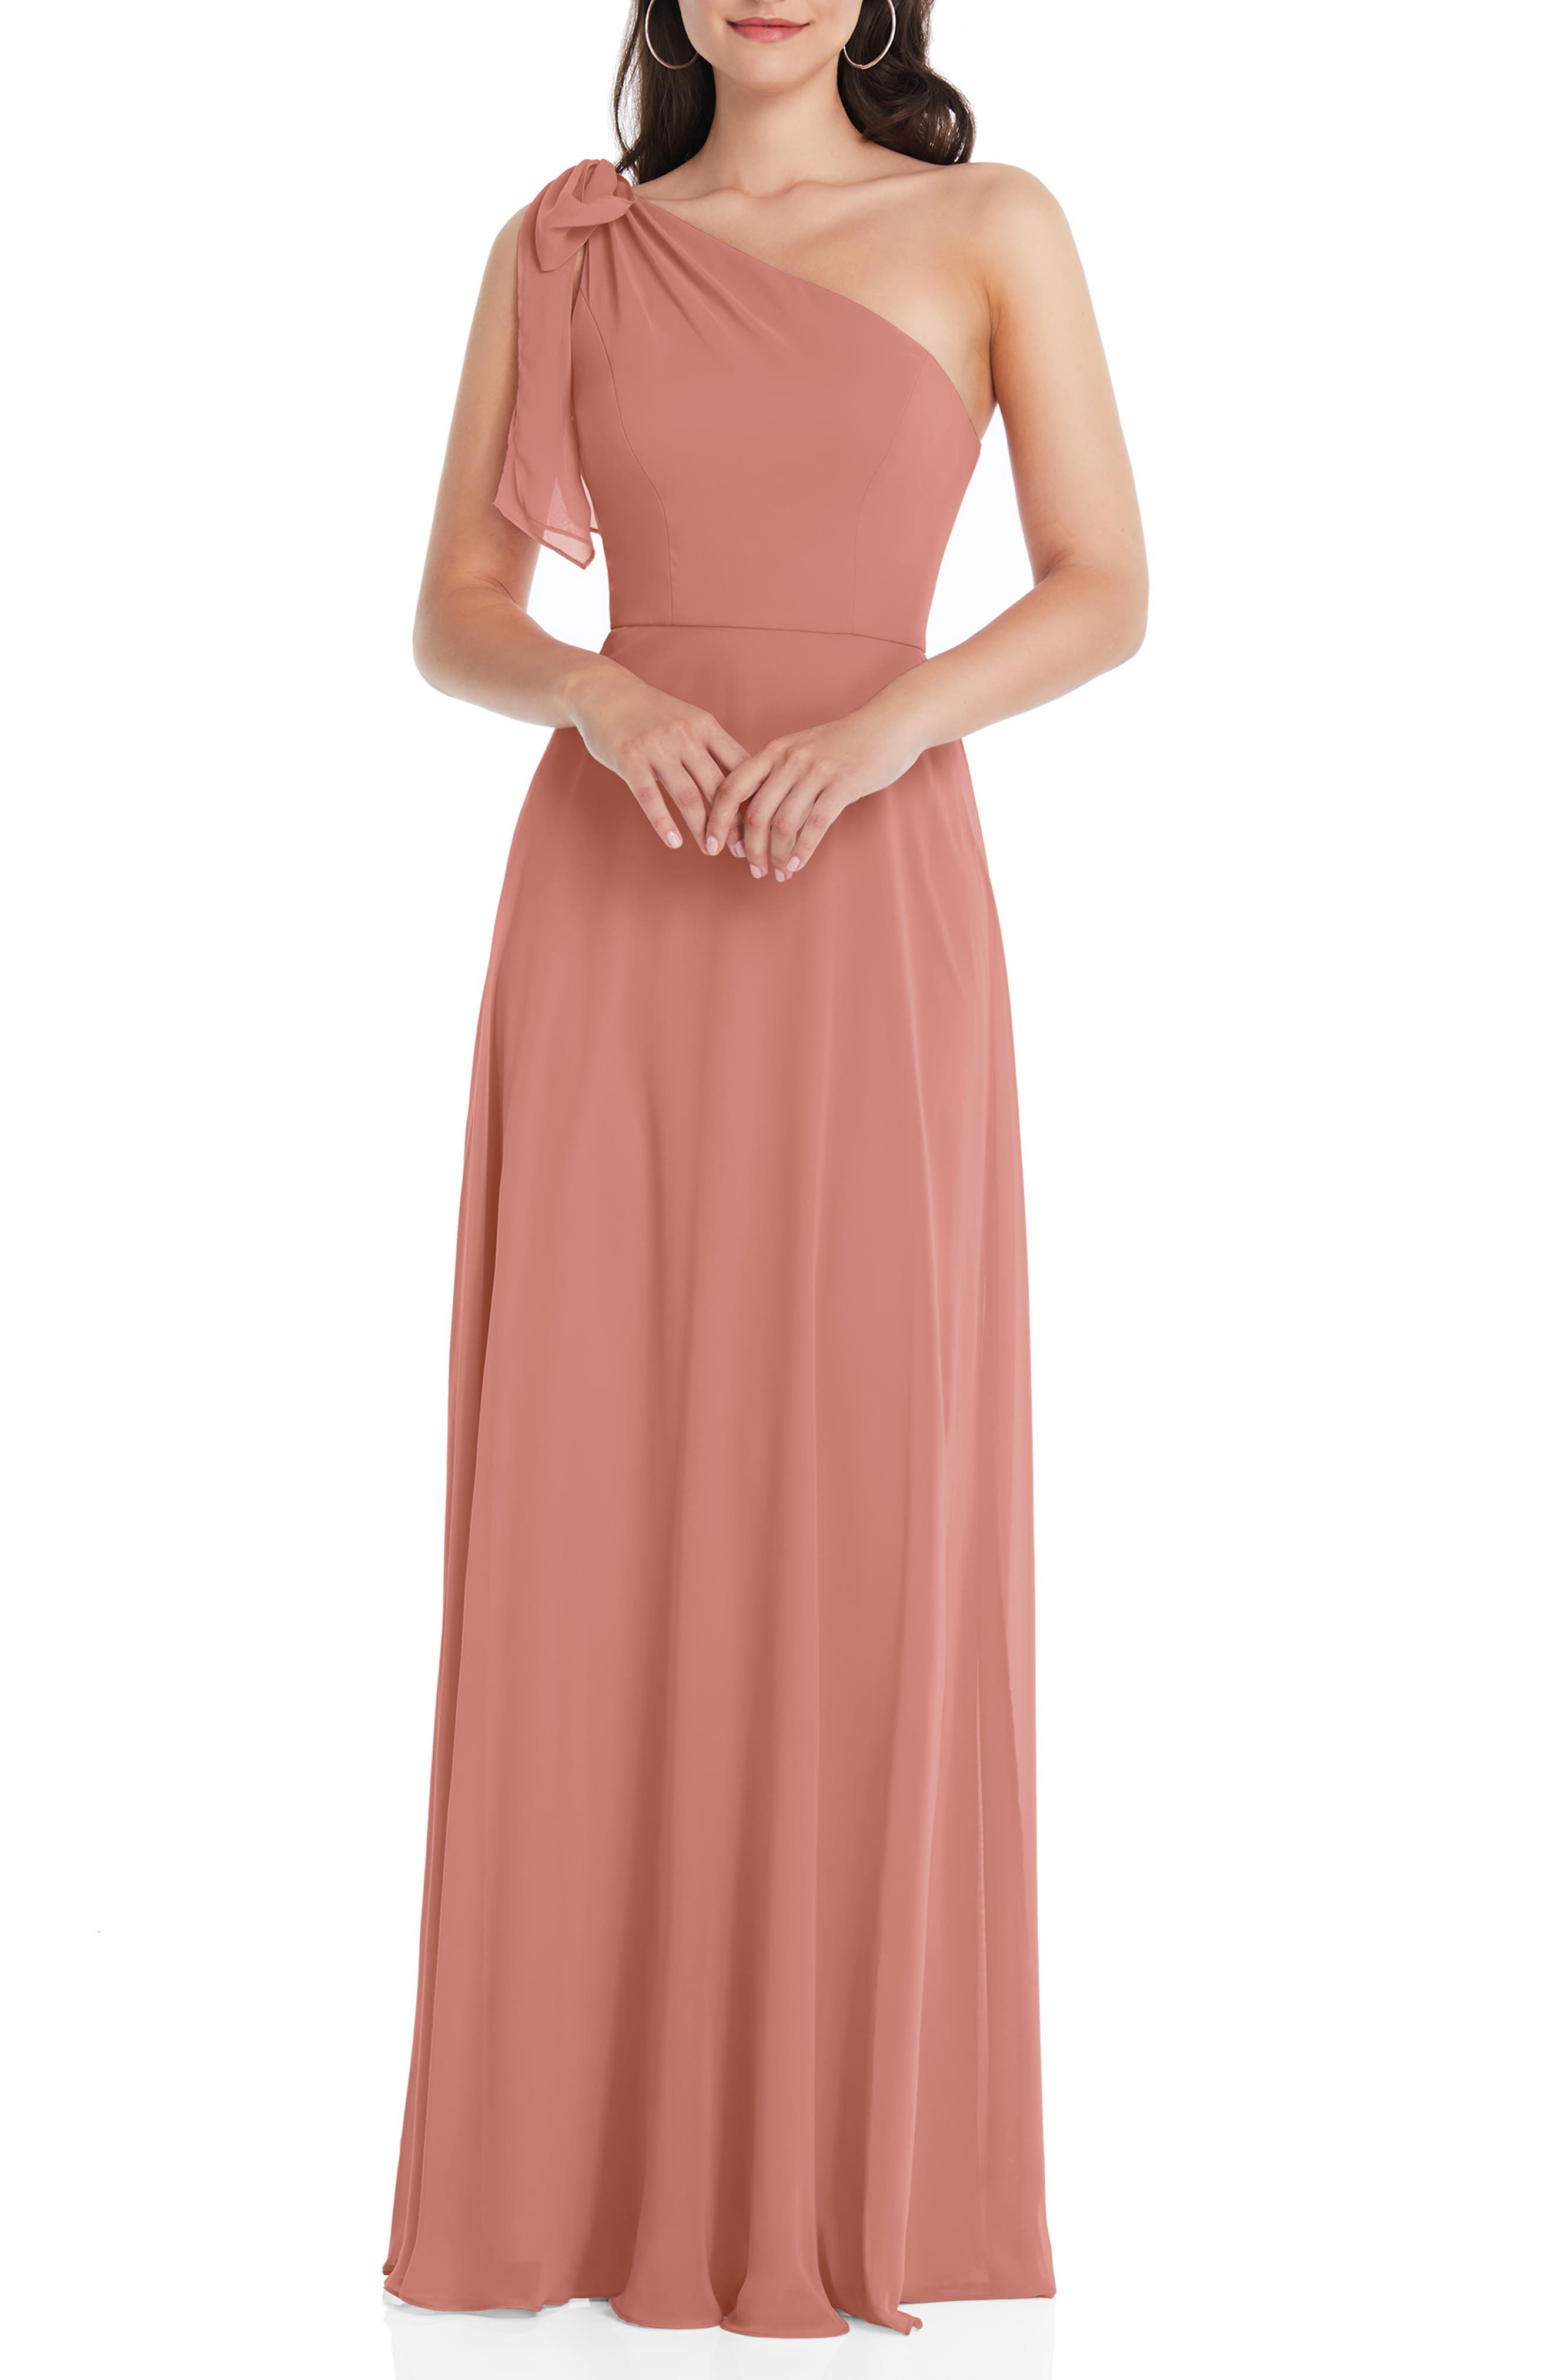 Fashion Dresses One Shoulder Dresses carlyna One Shoulder Dress pink elegant 